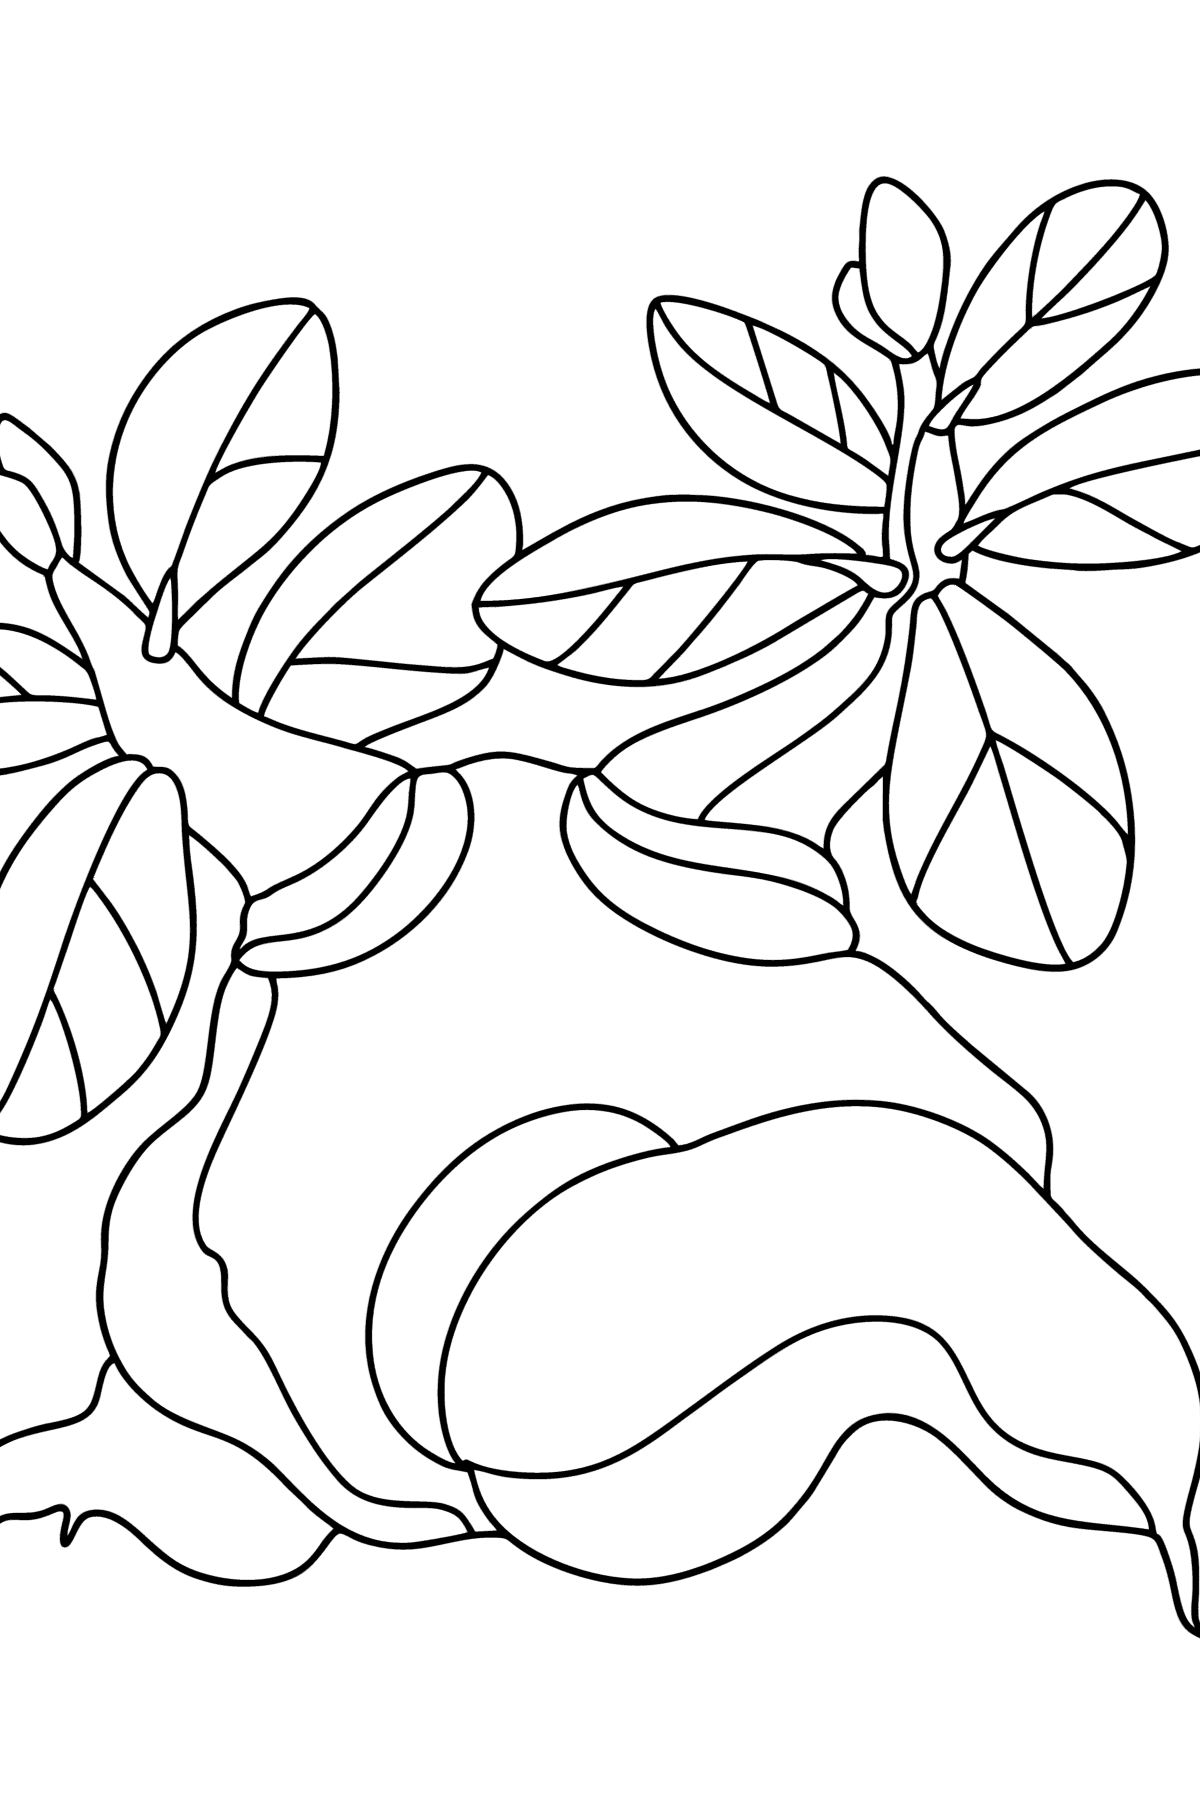 Desenho de Adenium para colorir - Imagens para Colorir para Crianças